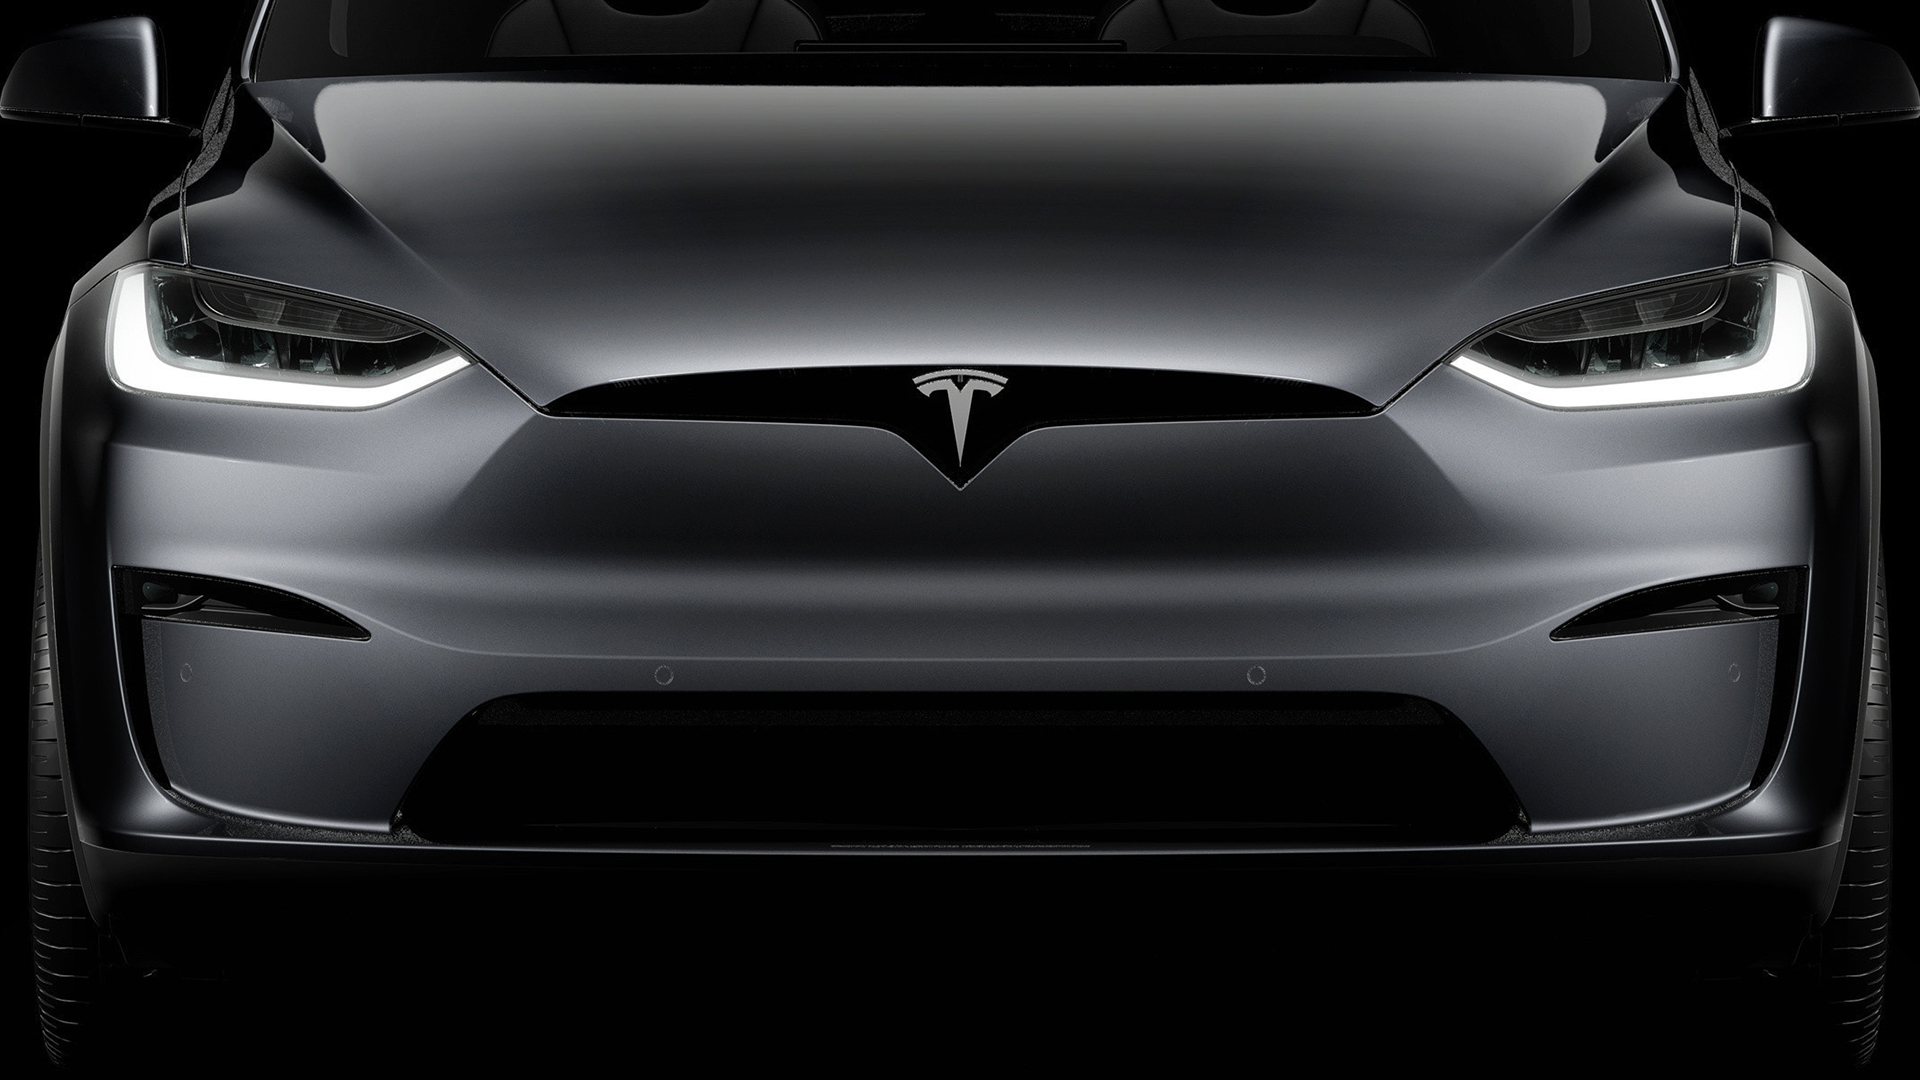 Financial Experts Analyze Elon Musk's Assertion about Tesla Robotaxis